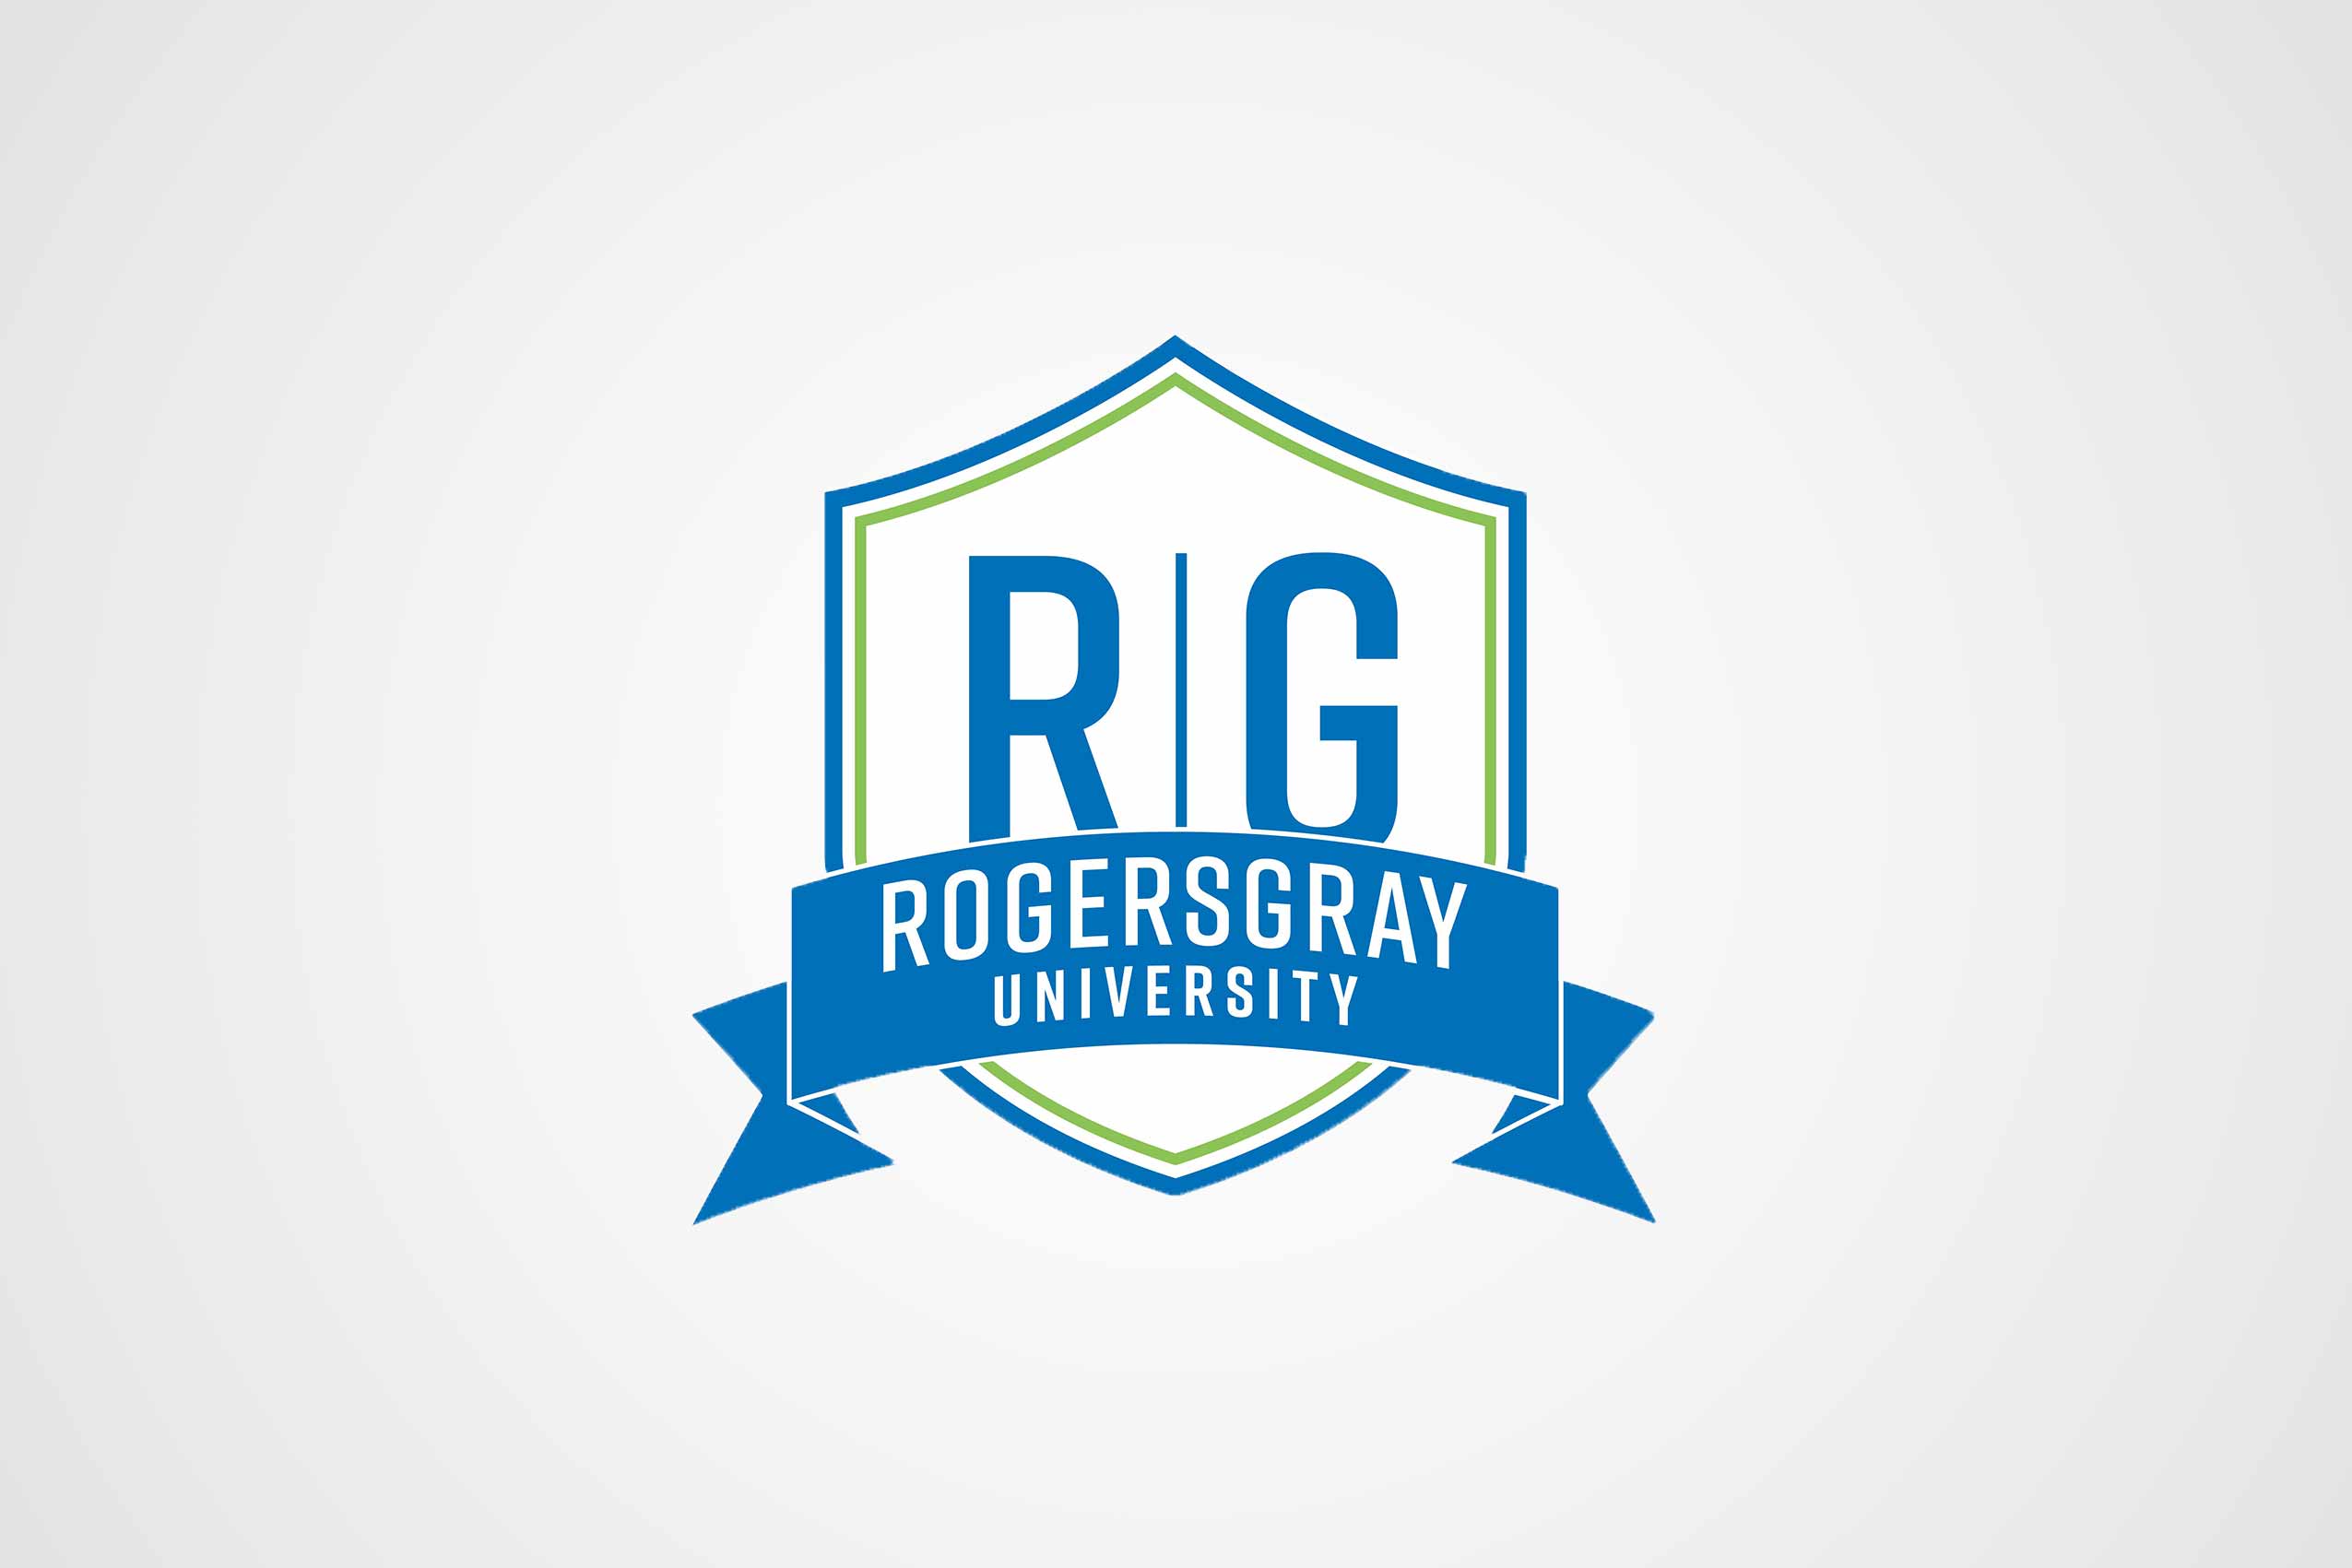 RogersGray University emblem